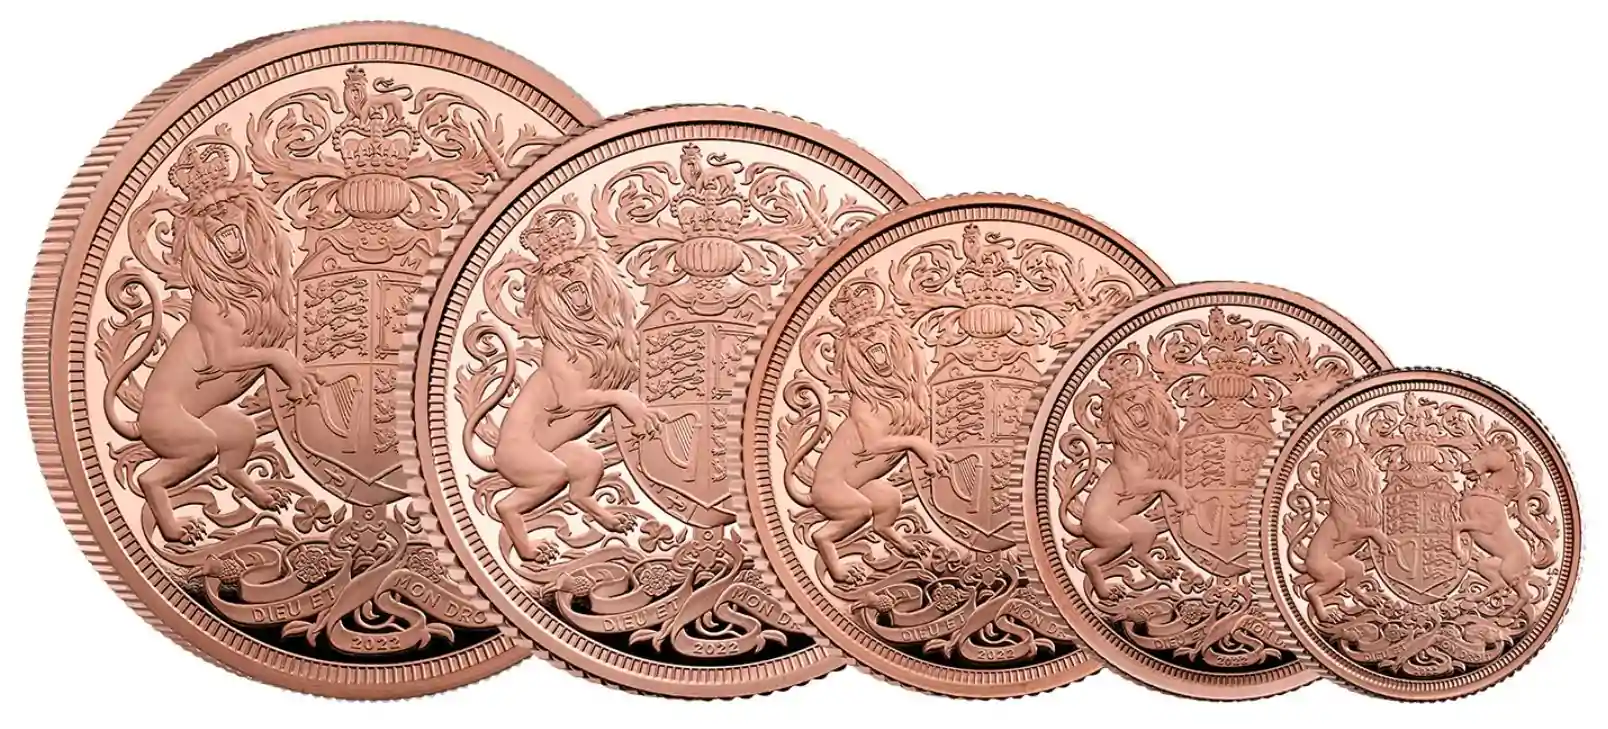 Złoty Brytyjski Suweren 2022 Memoriał Królowej Elżbiety II Proof - zestaw 5 złotych monet